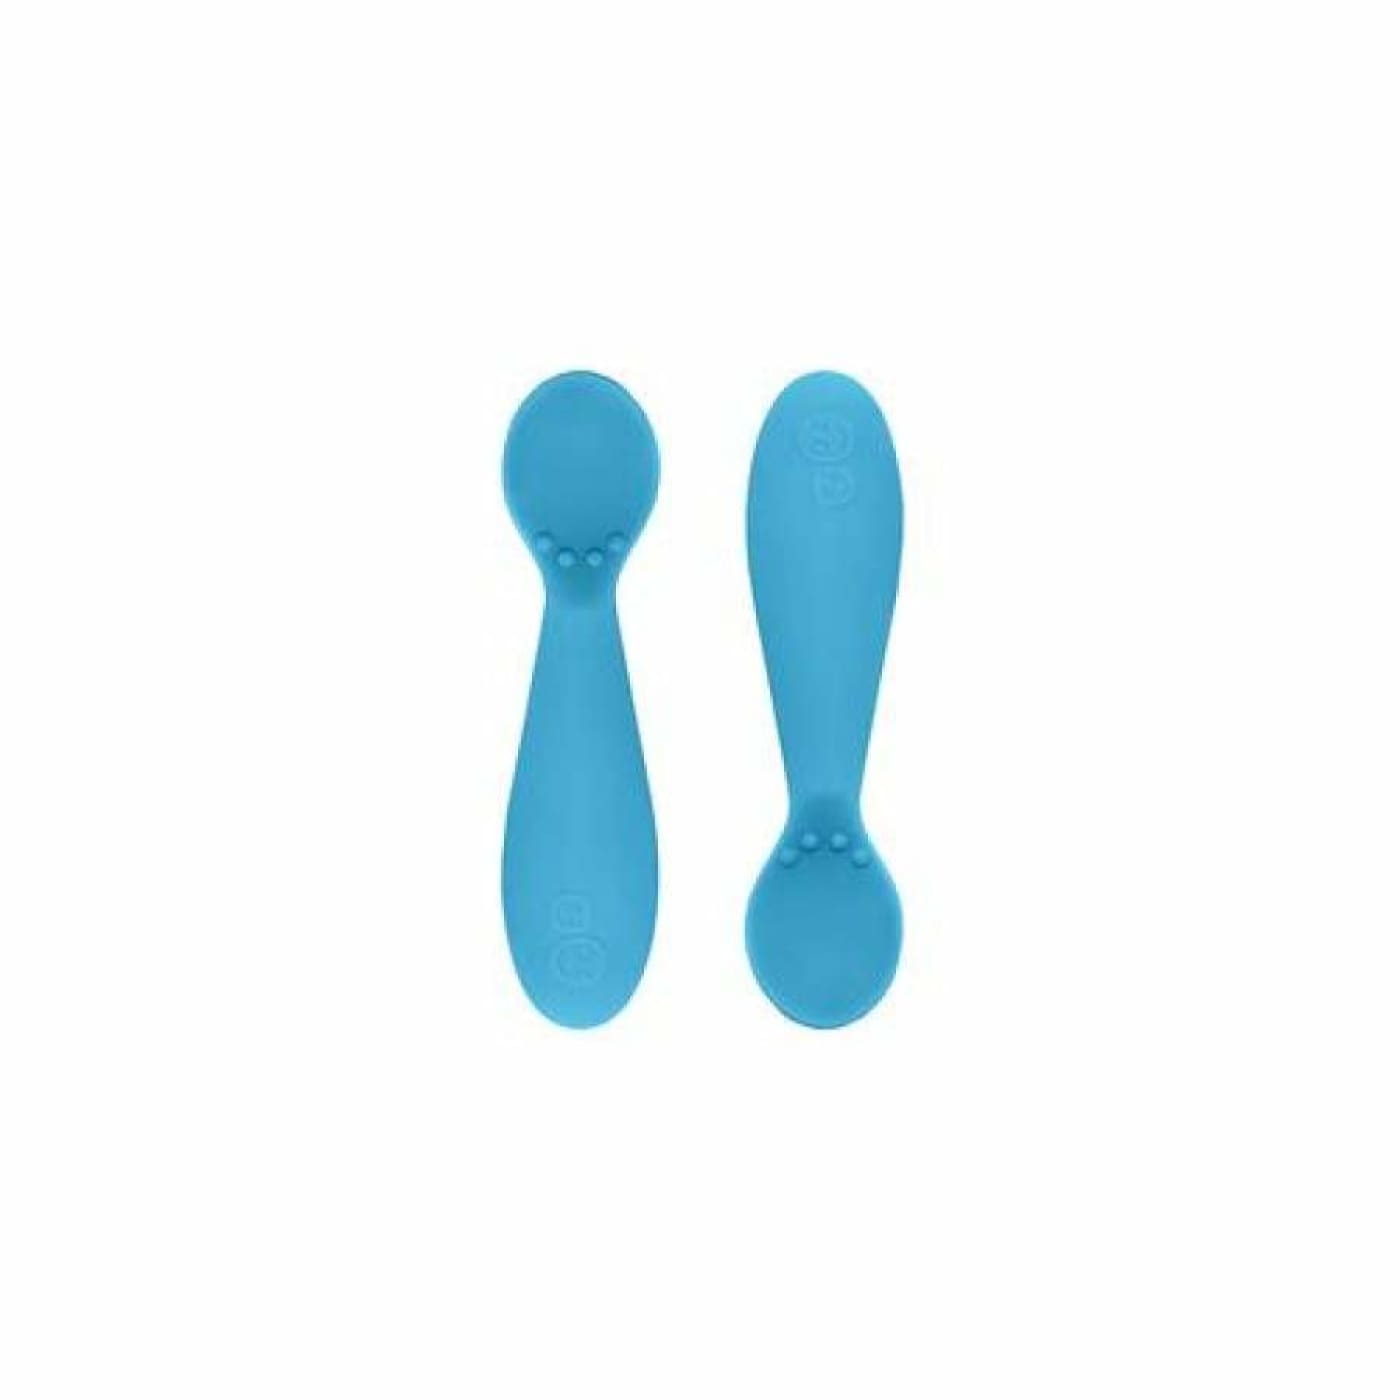 EZPZ Tiny Spoon 2pk - Blue - Blue - NURSING & FEEDING - CUTLERY/PLATES/BOWLS/TOYS